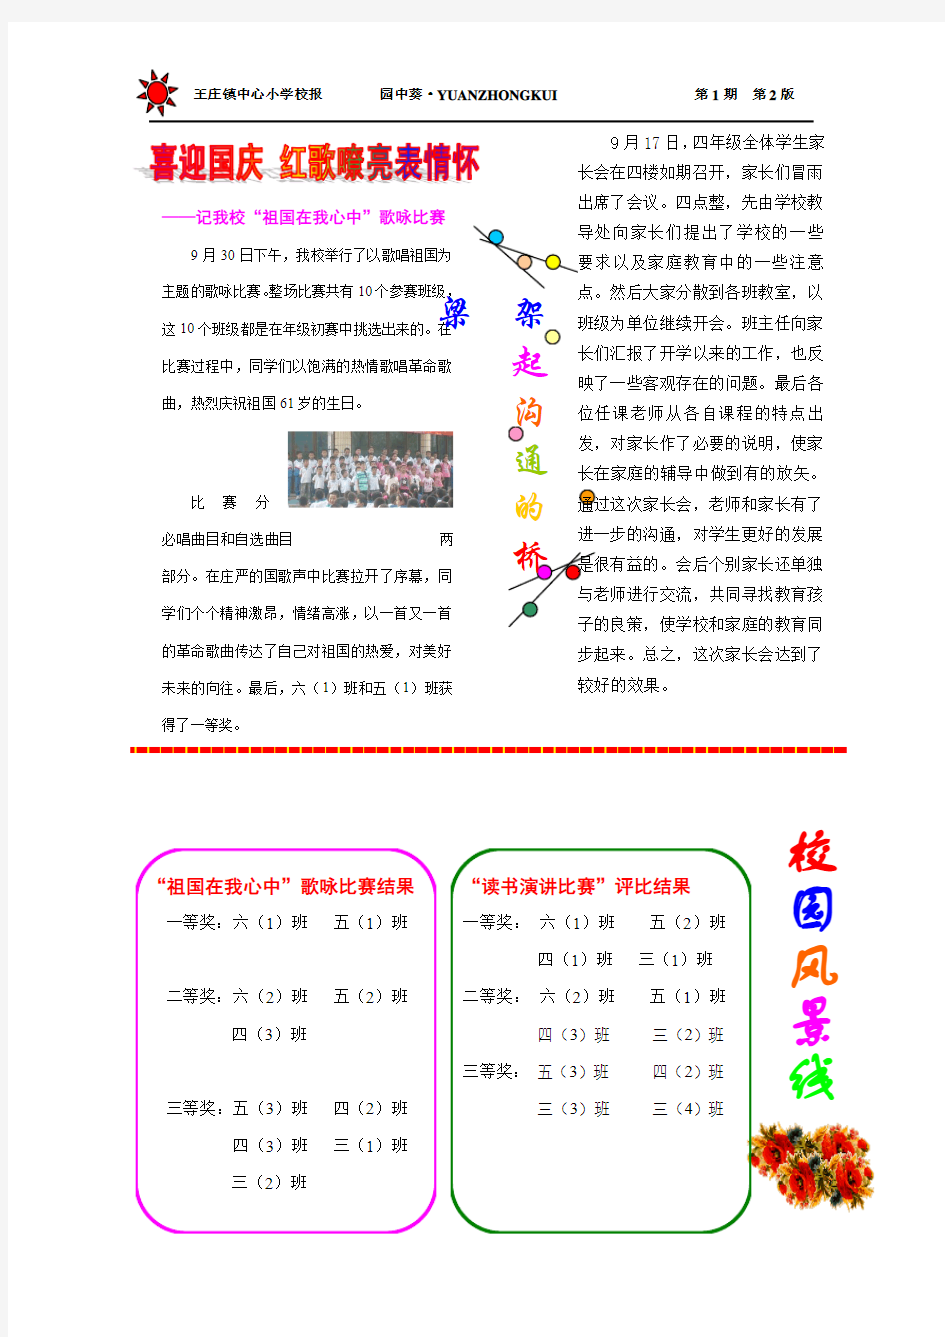 王庄镇中心小学校报 园中葵·YUANZHONGKUI 第1期 第1版